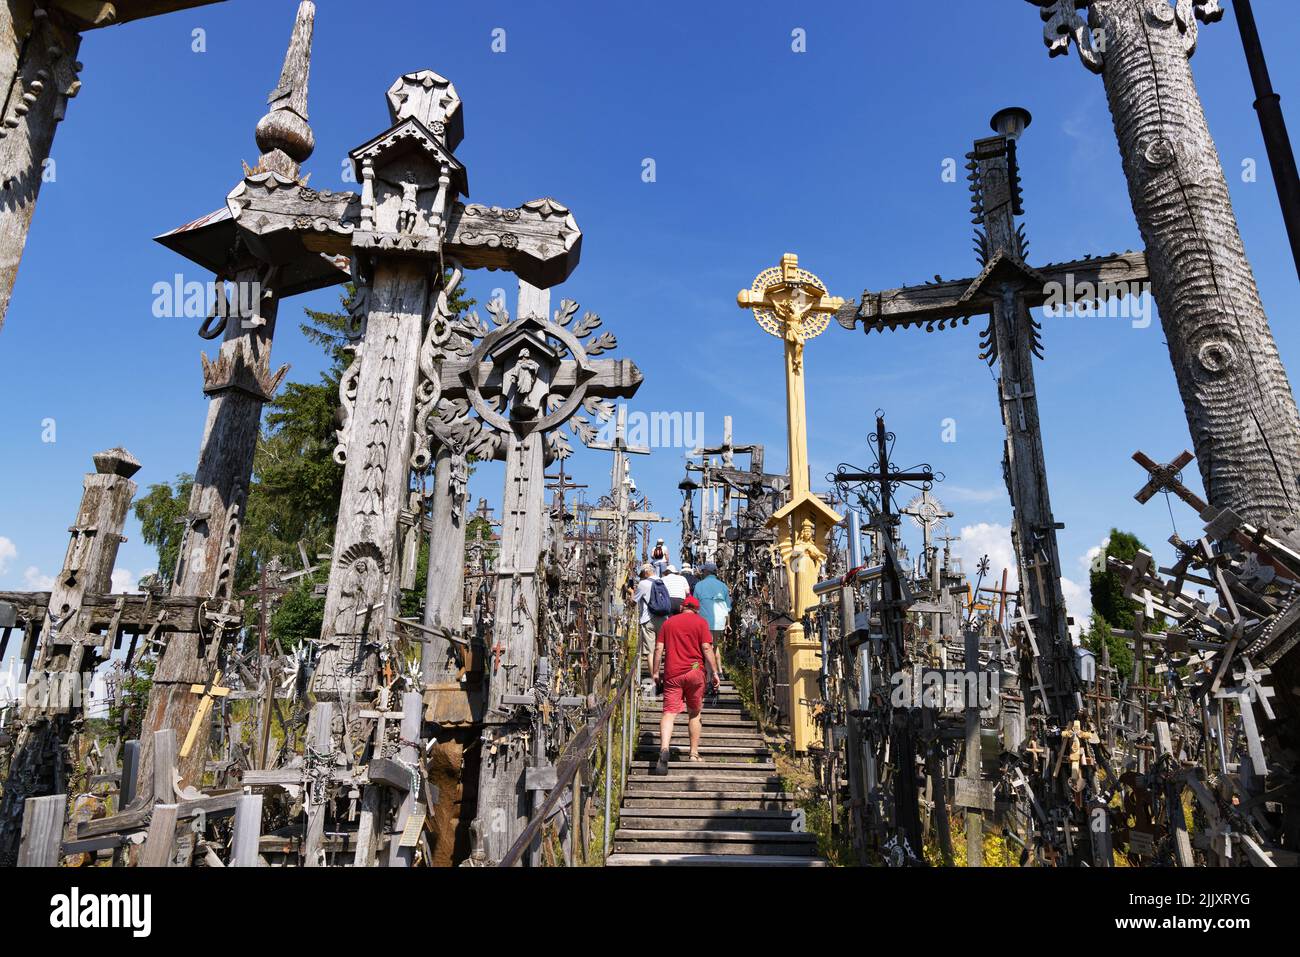 Lituania turisti; persone che visitano la collina delle croci, un luogo di pellegrinaggio religioso cristiano con molte croci e statue, Lituania Europa Foto Stock